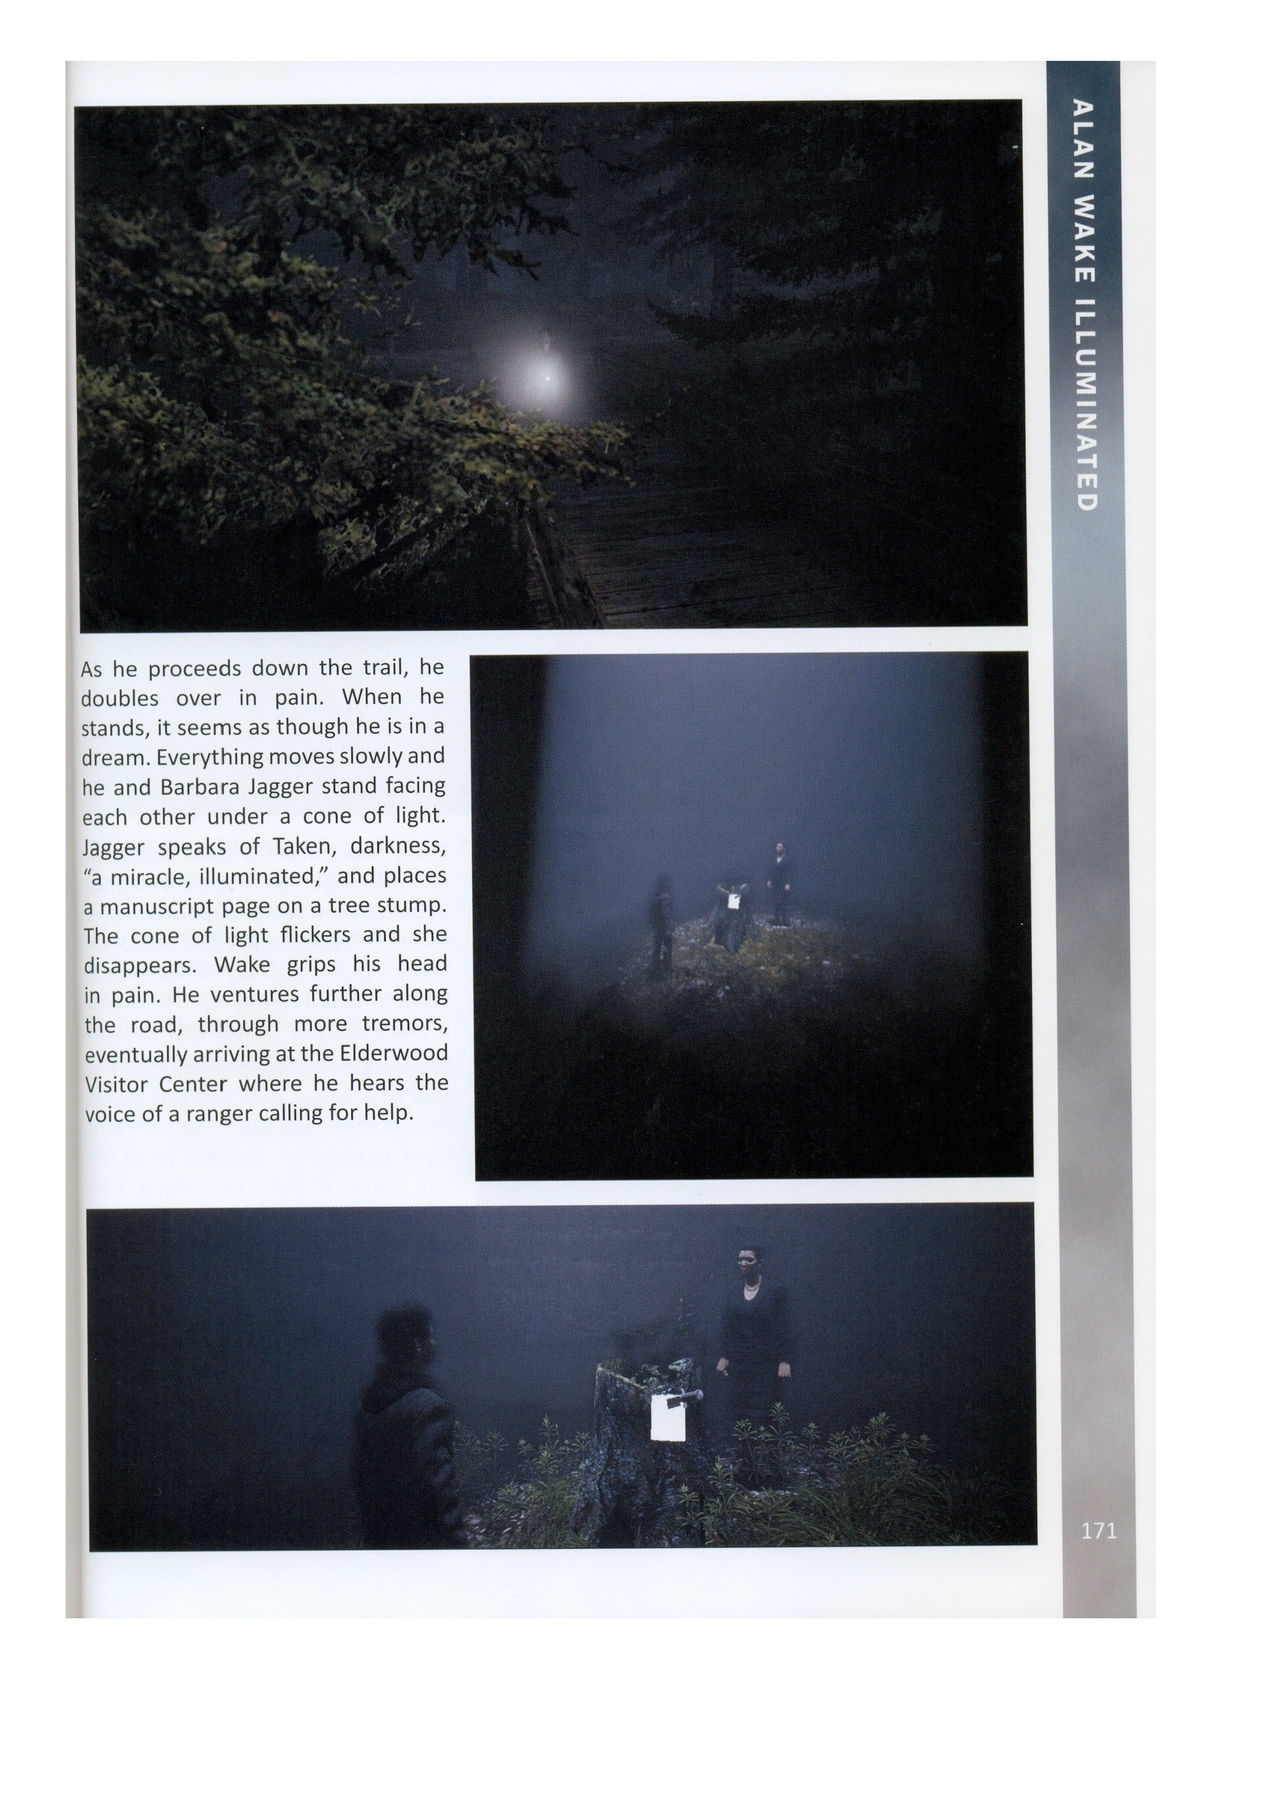 Alan Wake Illuminated 171